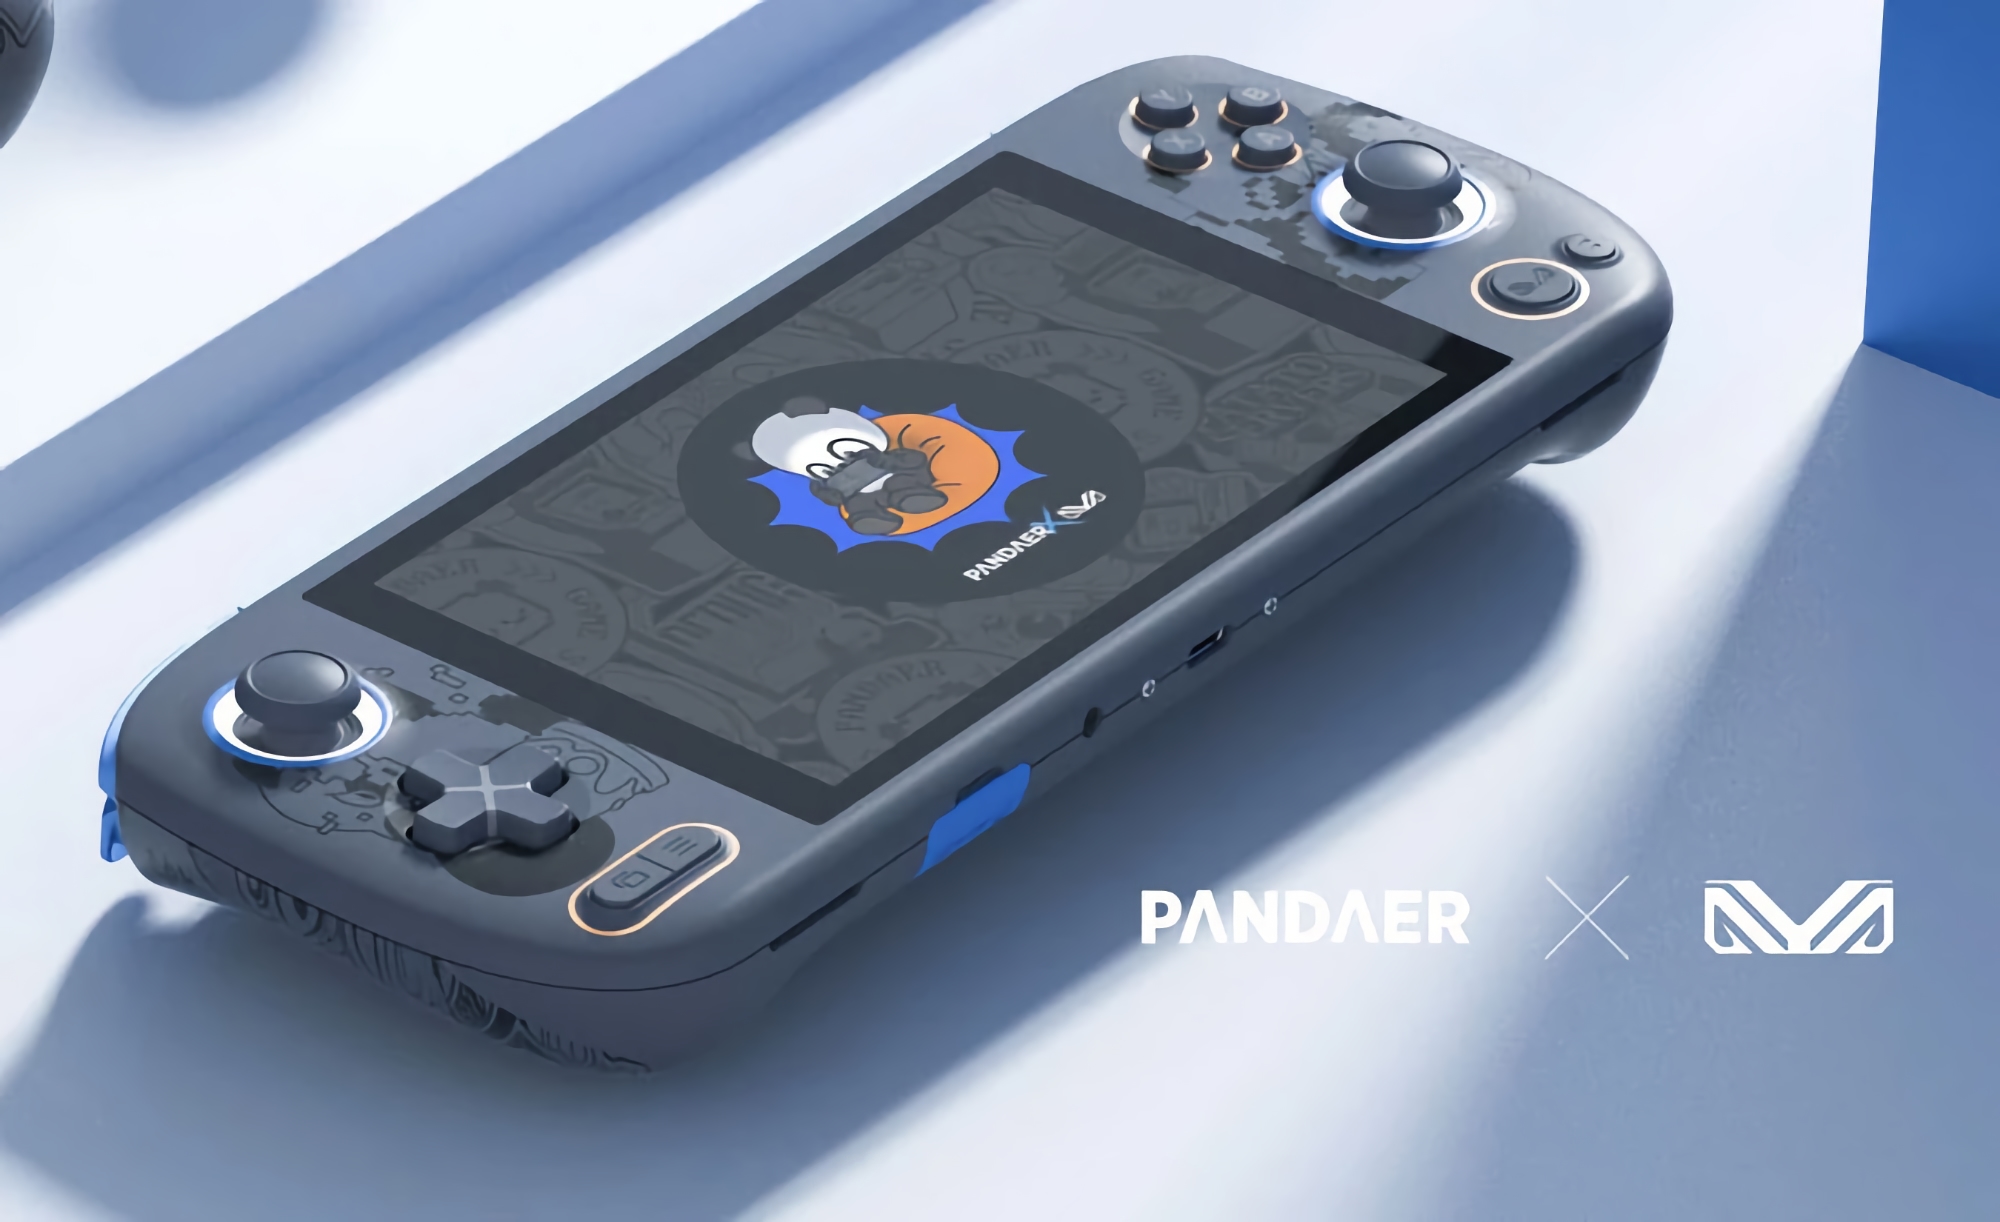 Nintendo Switch-Konkurrent: Meizu wird am 9. Juni eine Spielkonsole der Marke PANDAER vorstellen